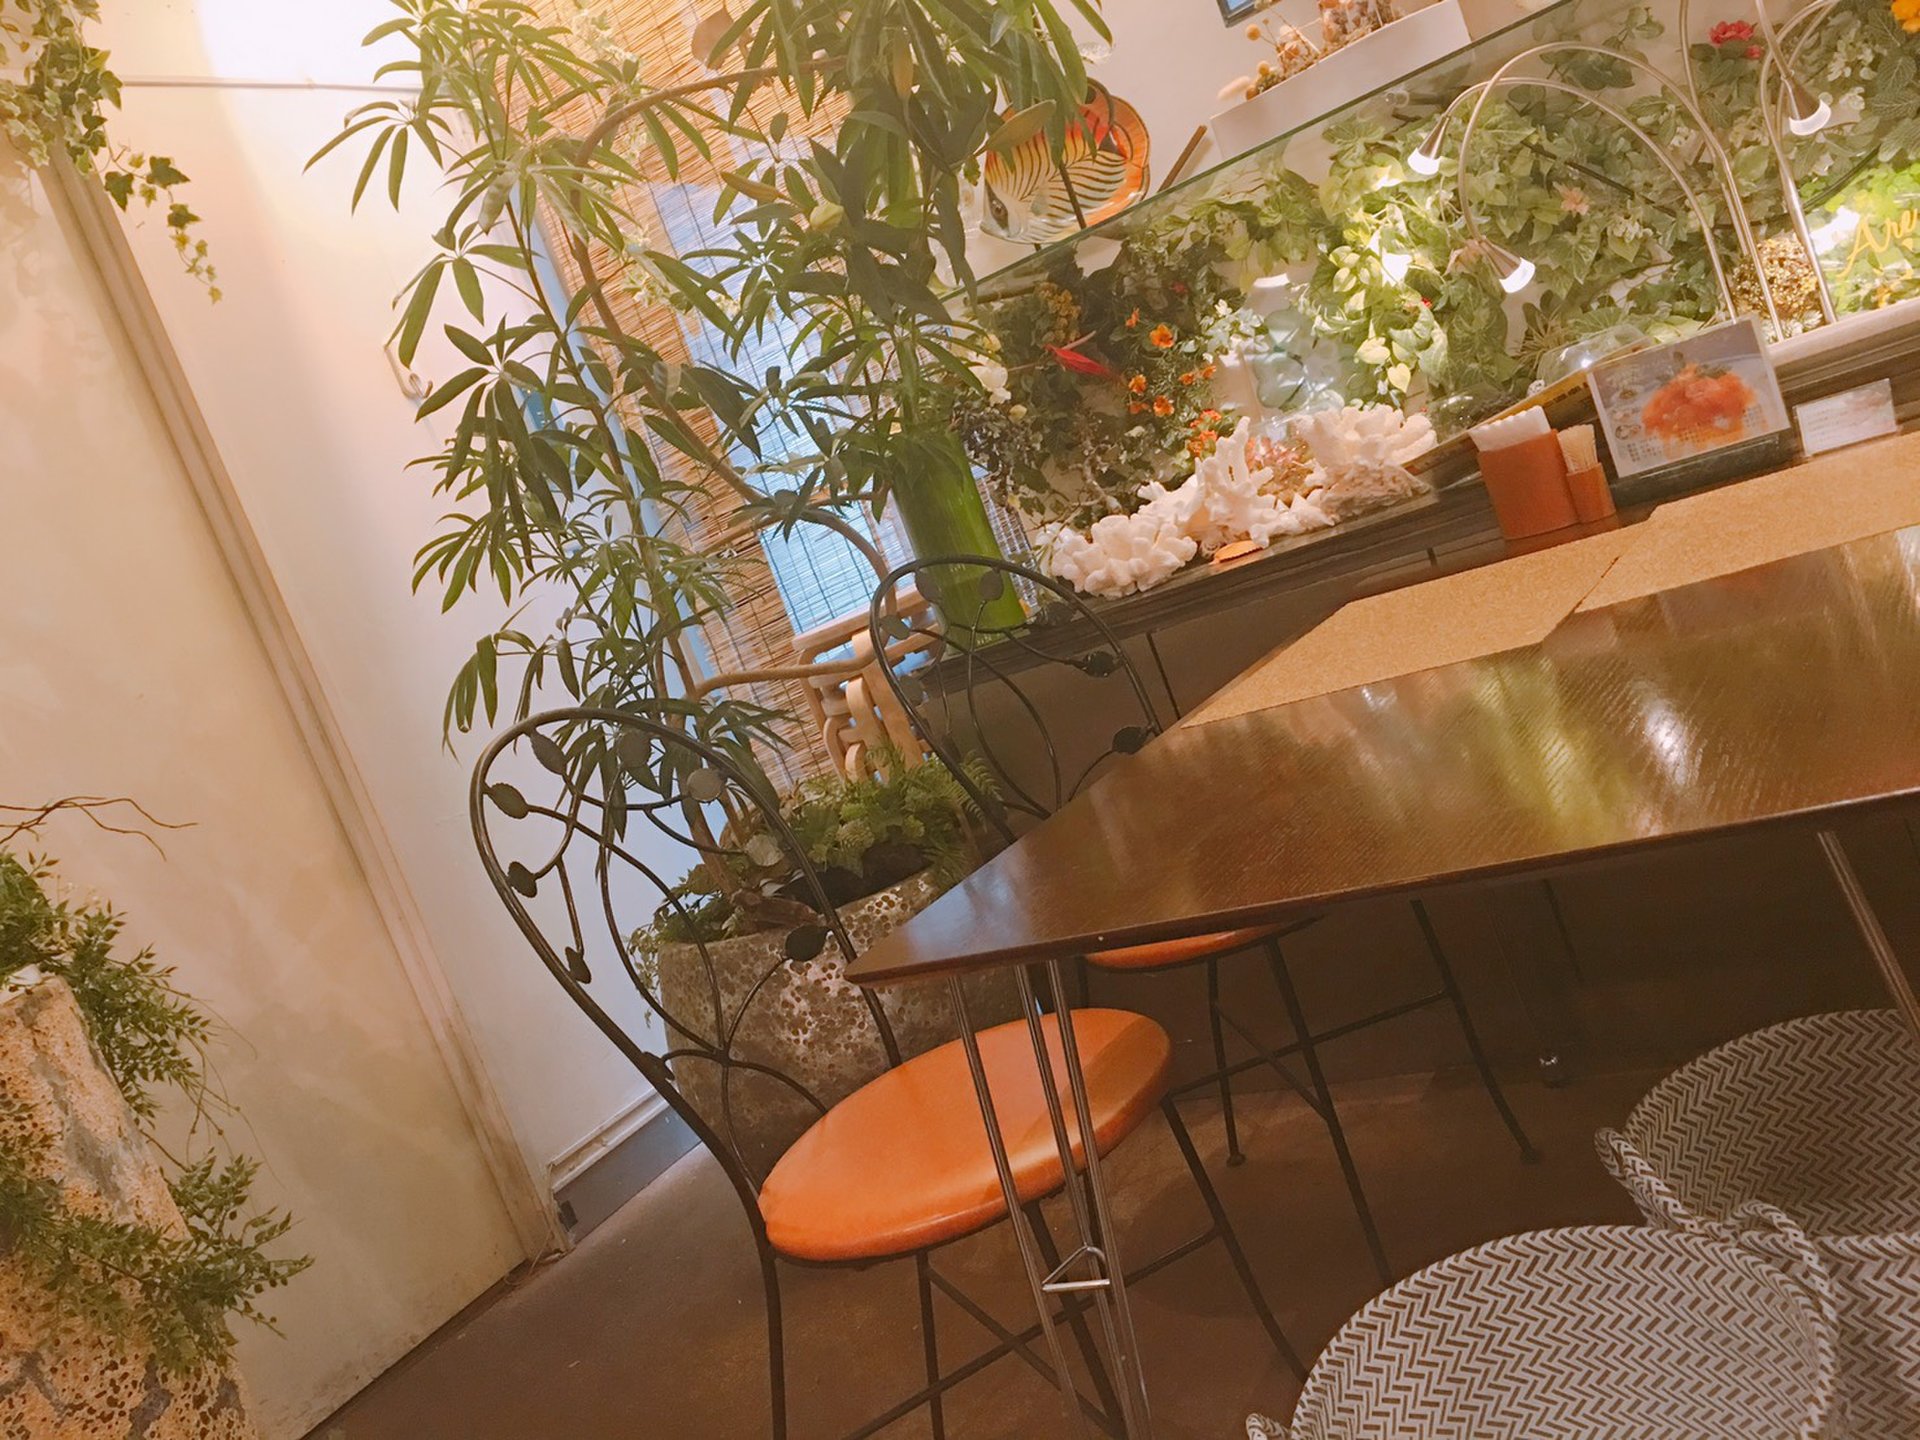 flower&cafe 風花